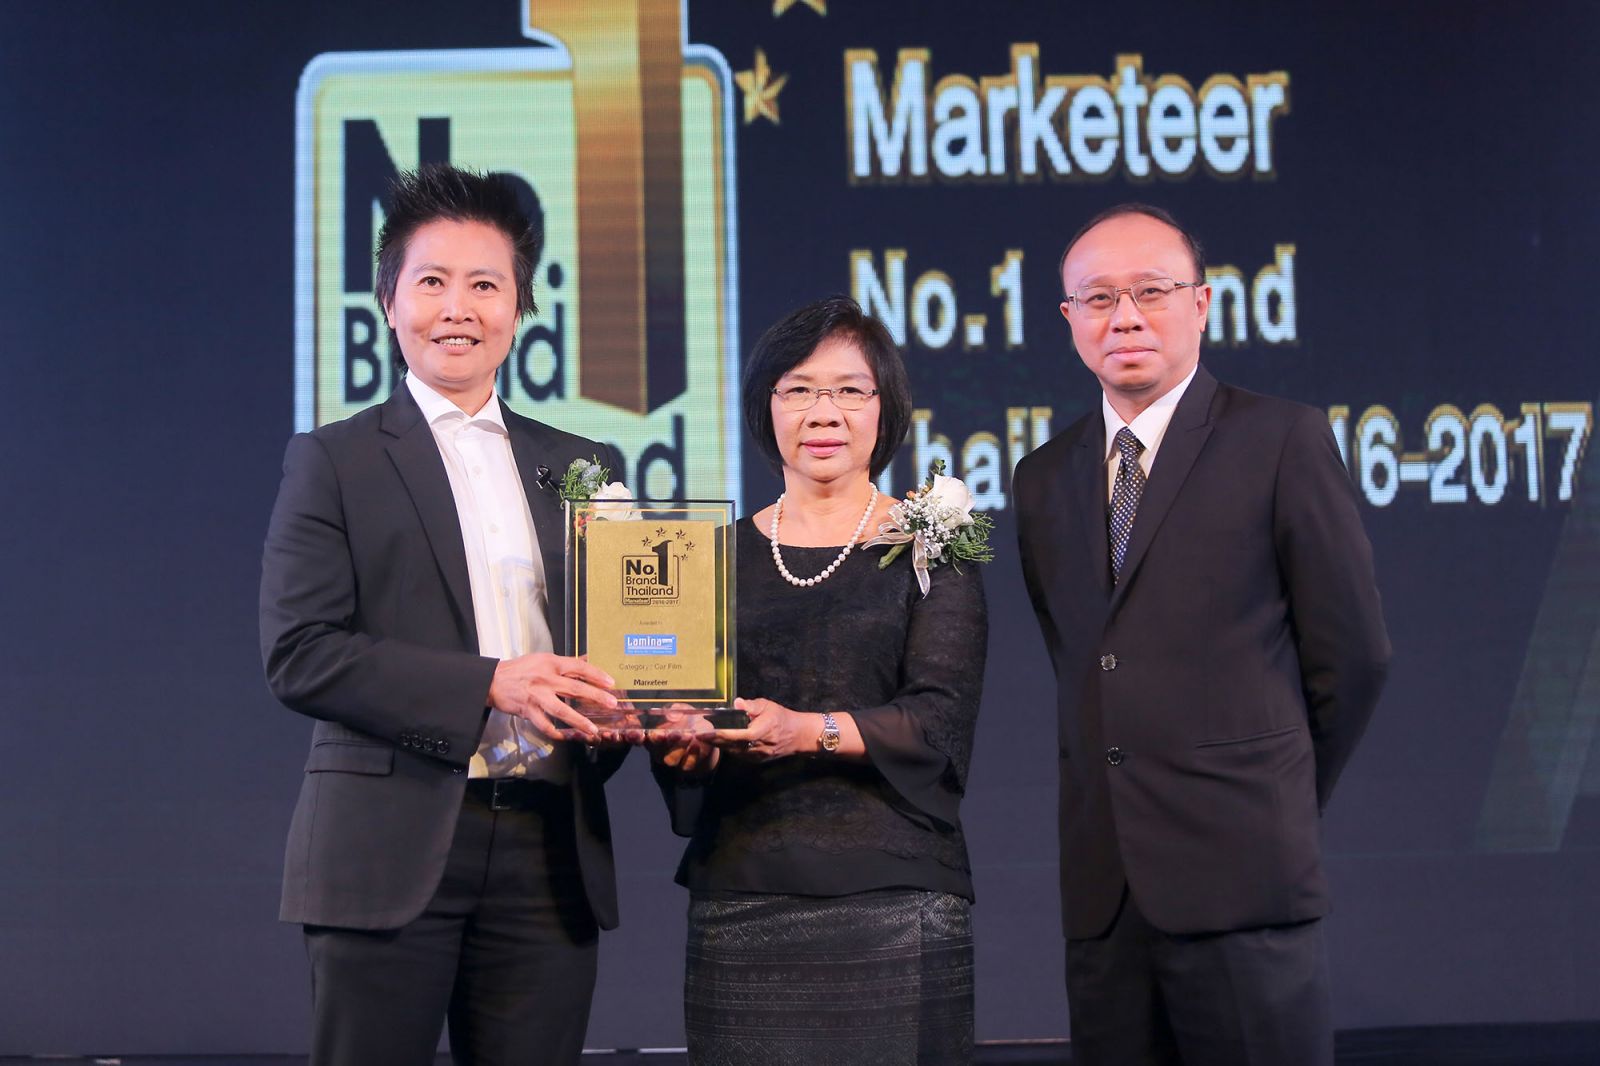  ลามิน่าครองใจผู้บริโภคต่อเนื่อง คว้ารางวัล Marketeer No.1 Brand Thailand 2016-2017 จากผลสำรวจผู้ใช้งานจริง